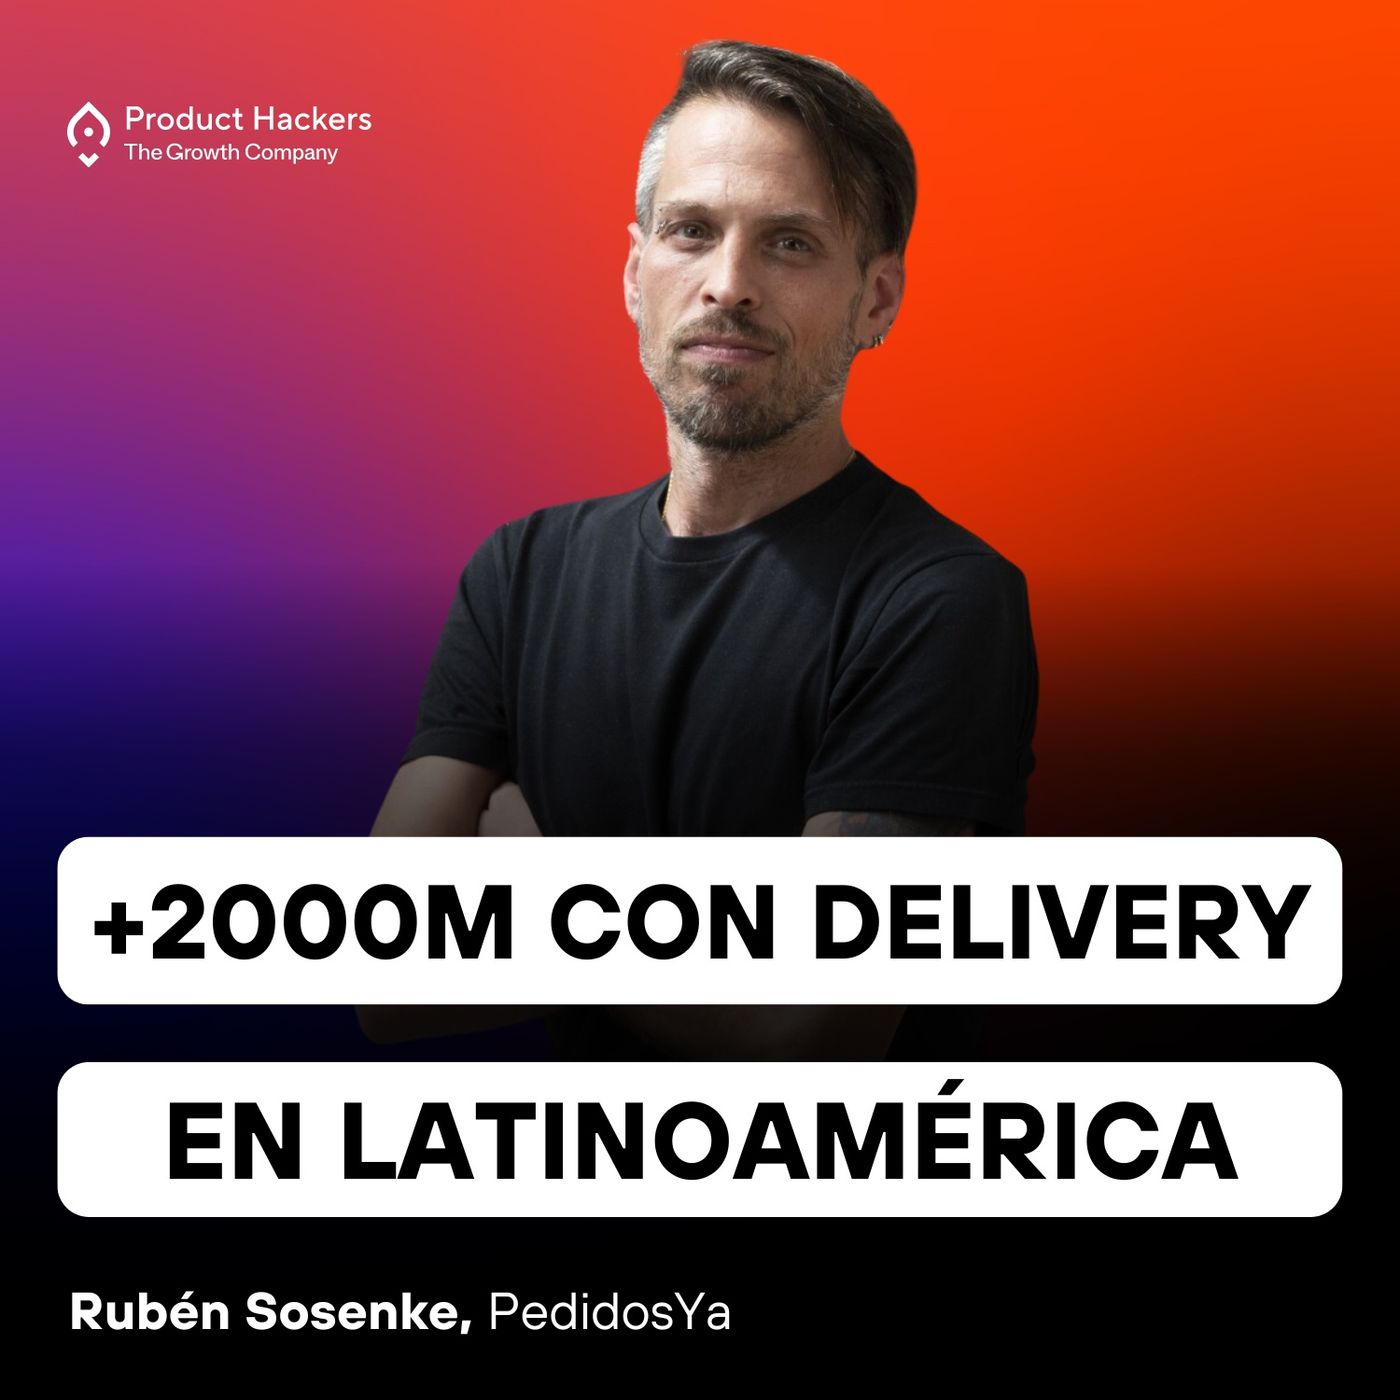 PedidosYa: +2000M con delivery en Latinoamérica con Rubén Sosenke